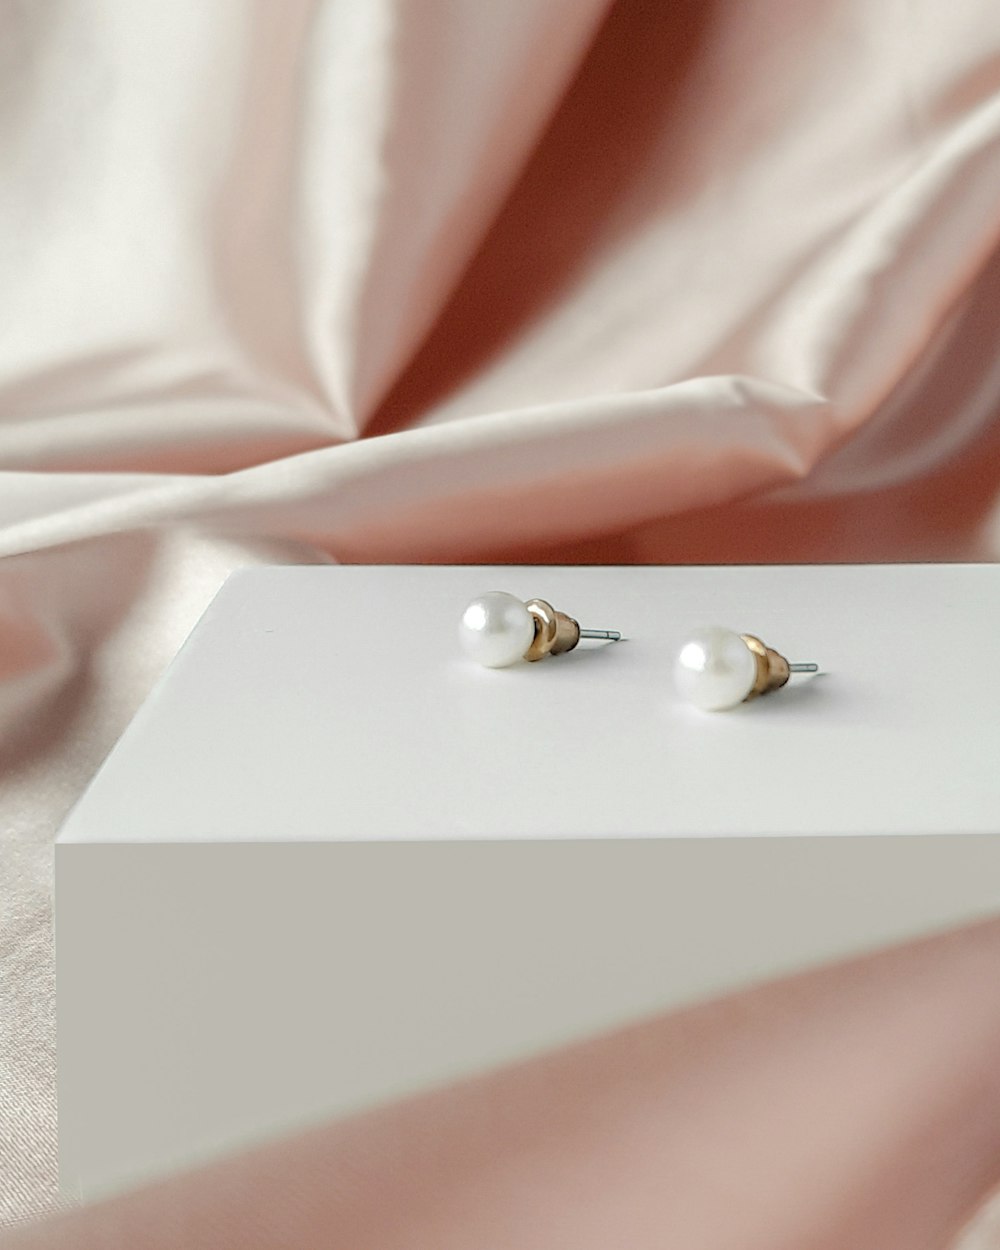 Ein Paar Perlenohrringe sitzt auf einer weißen Box